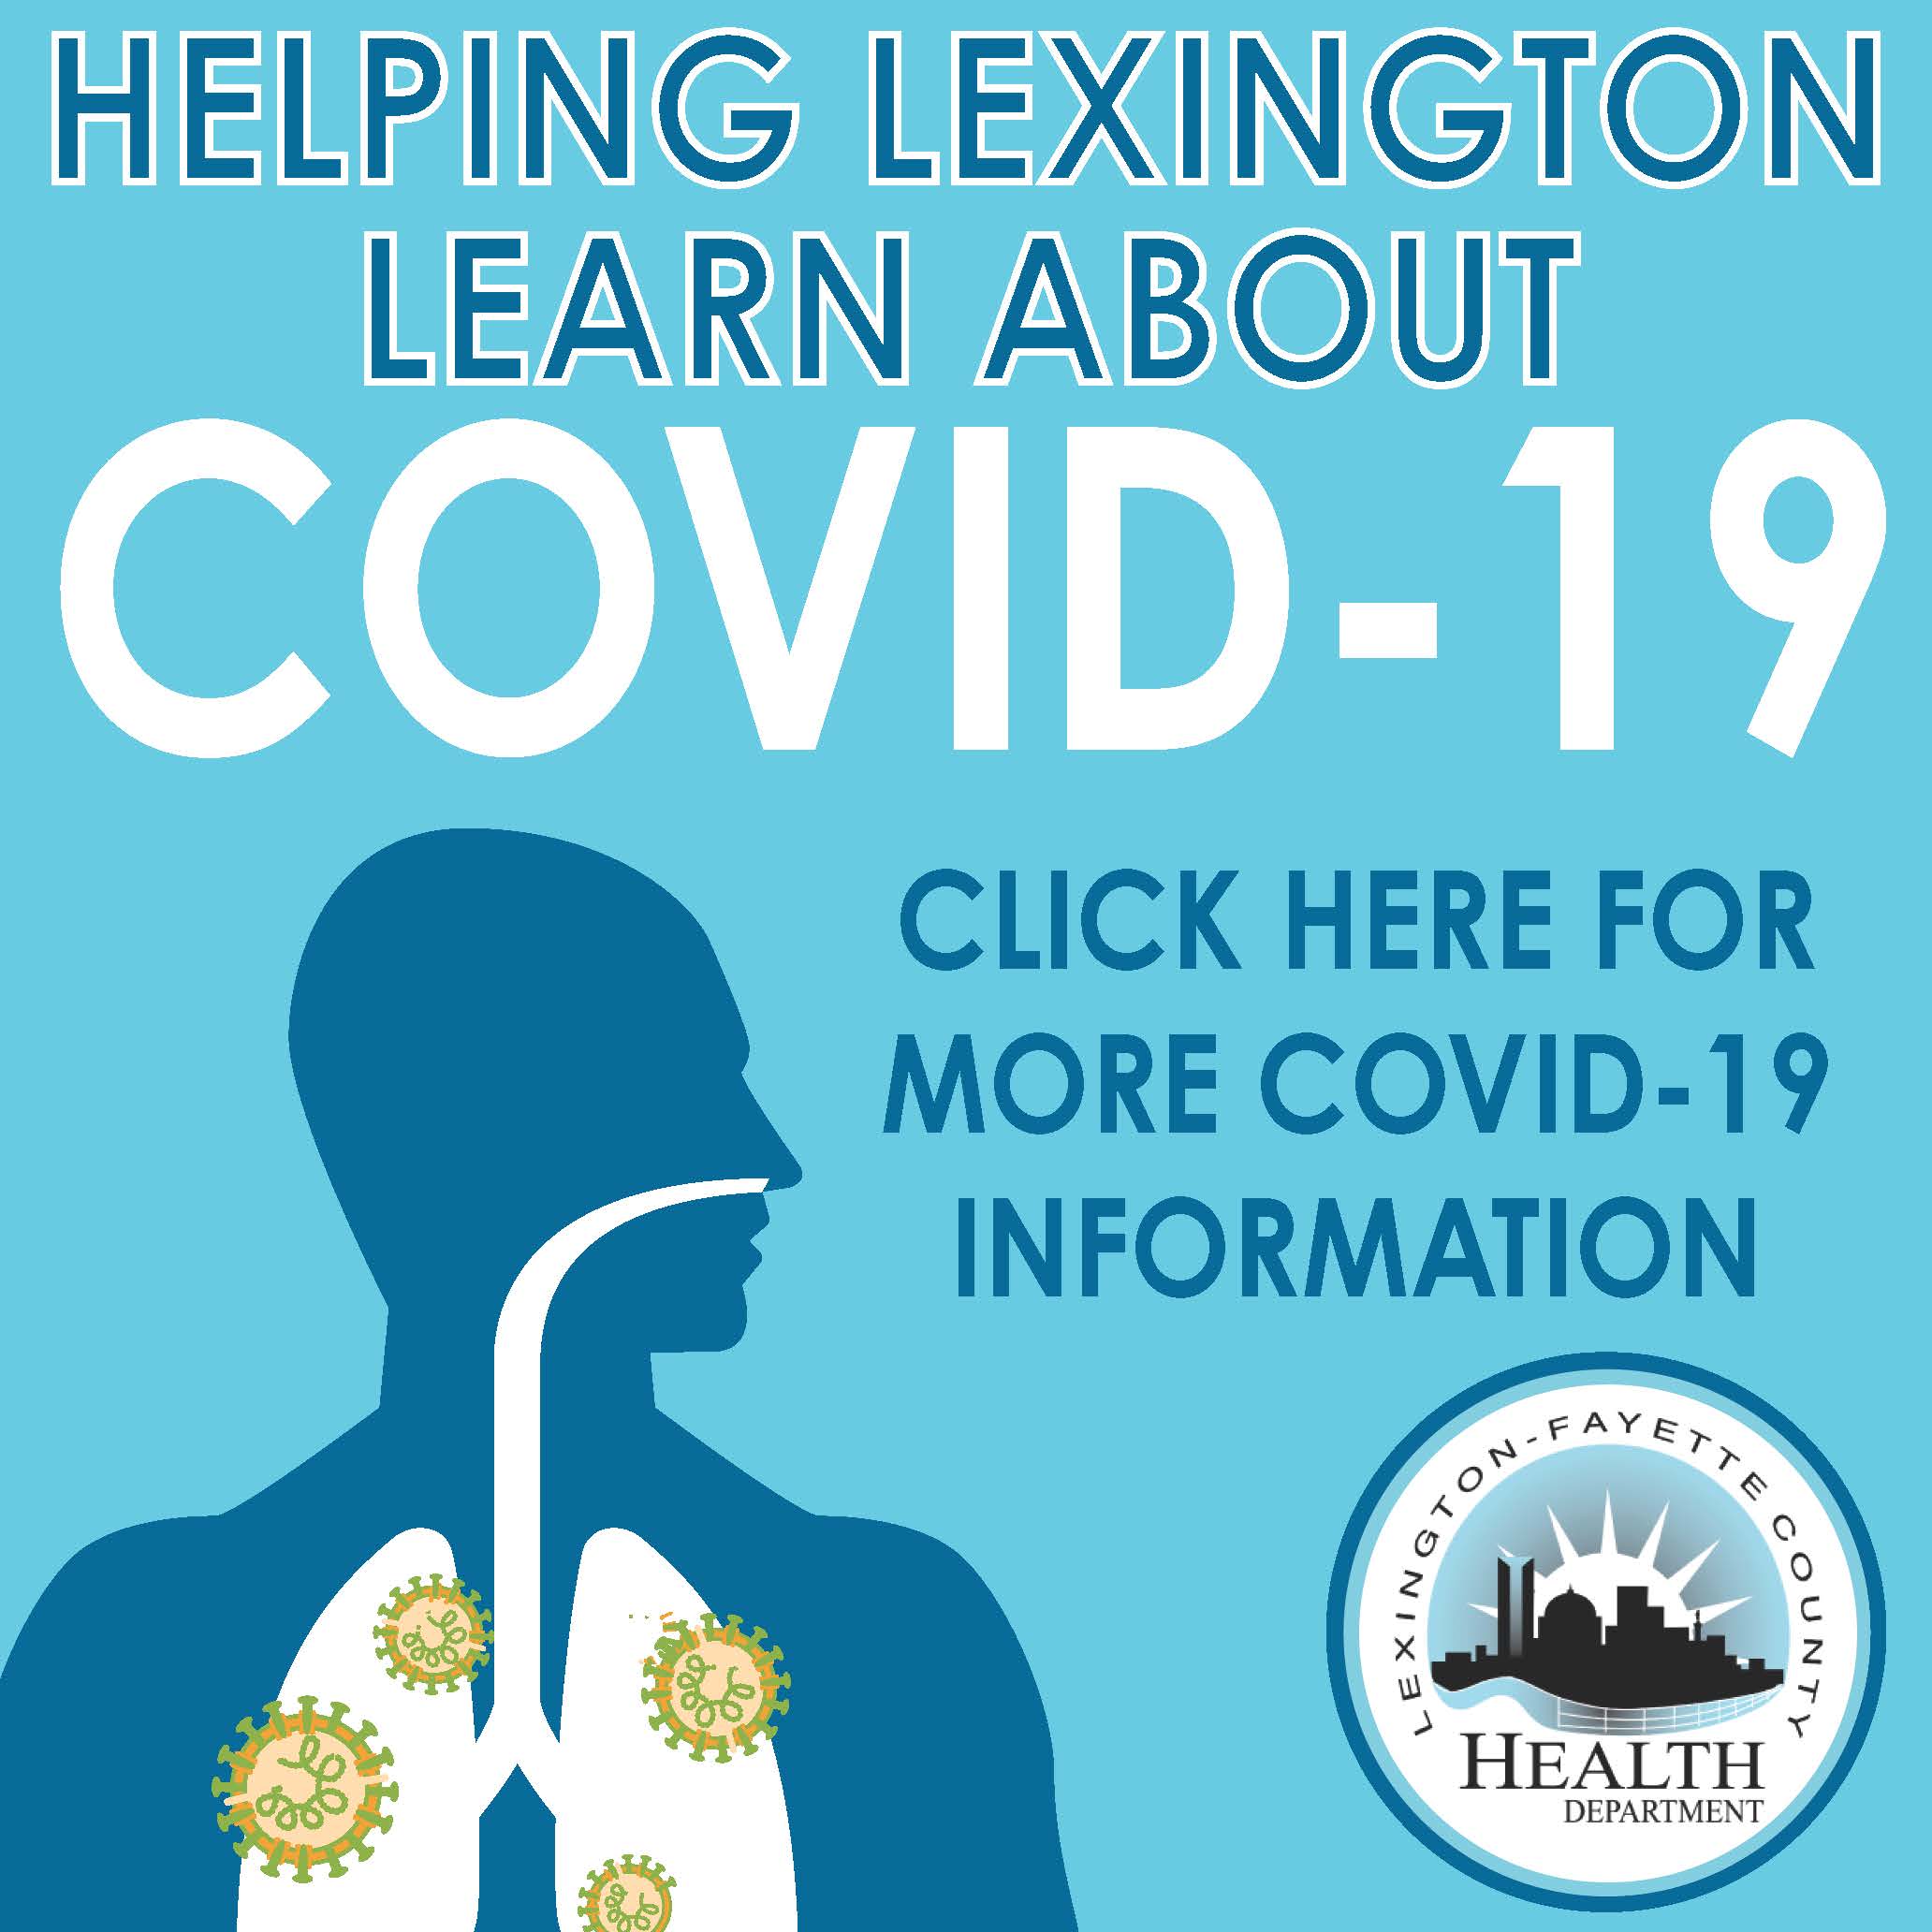 COVID-19 and Lexington